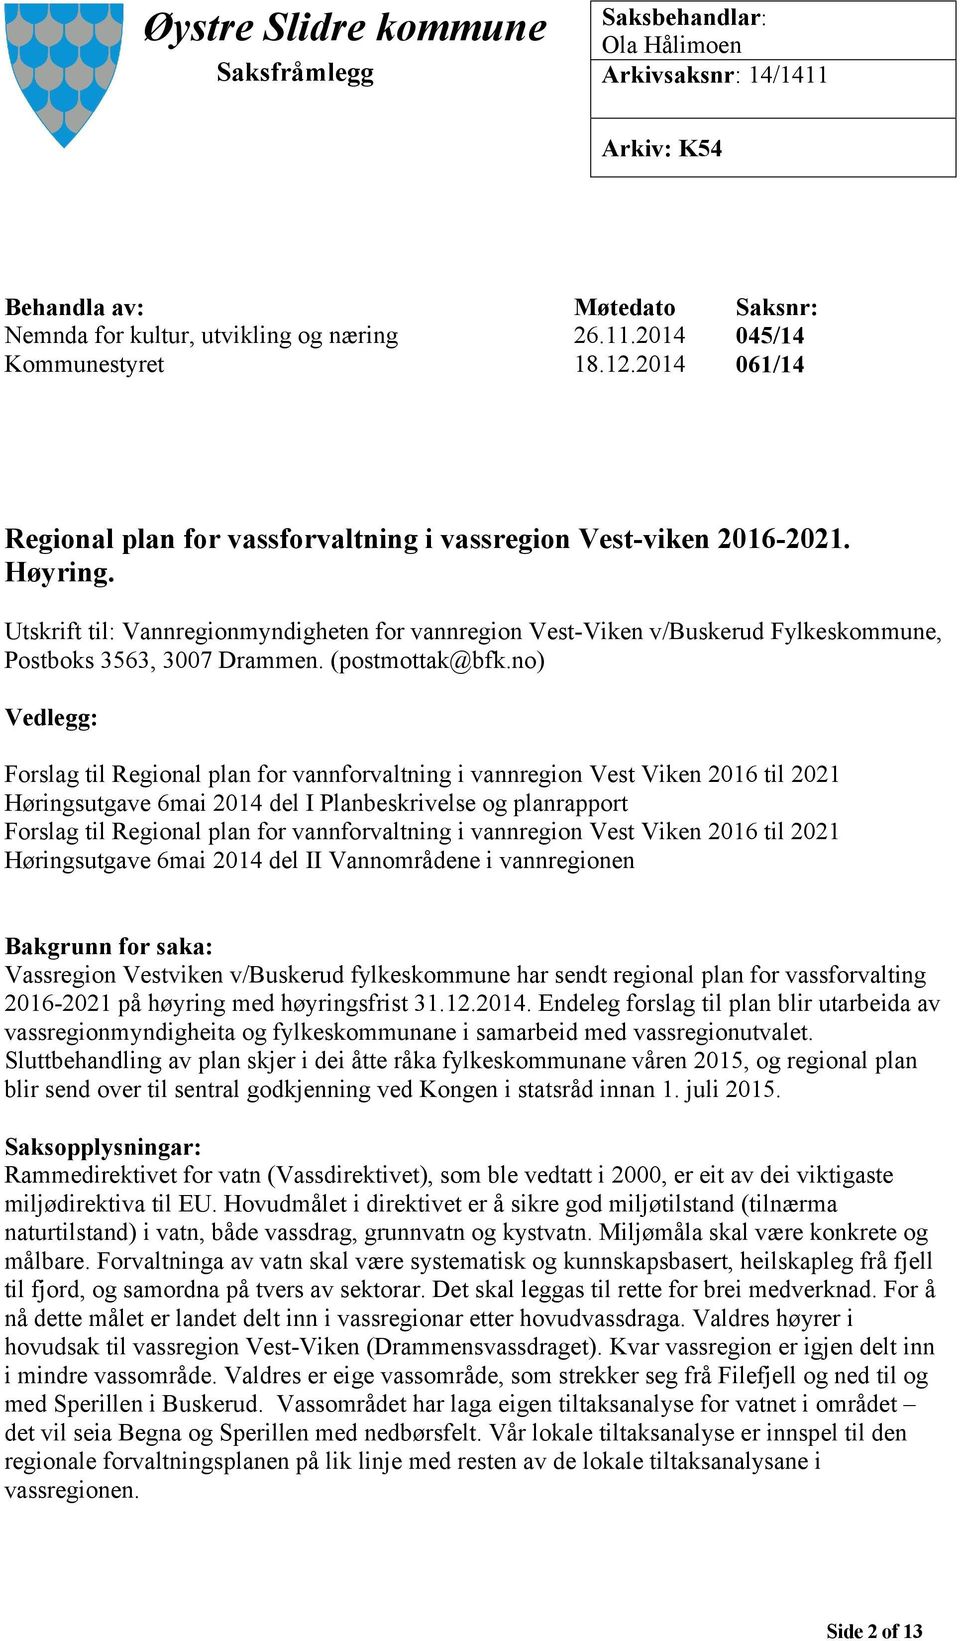 Utskrift til: Vannregionmyndigheten for vannregion Vest-Viken v/buskerud Fylkeskommune, Postboks 3563, 3007 Drammen. (postmottak@bfk.